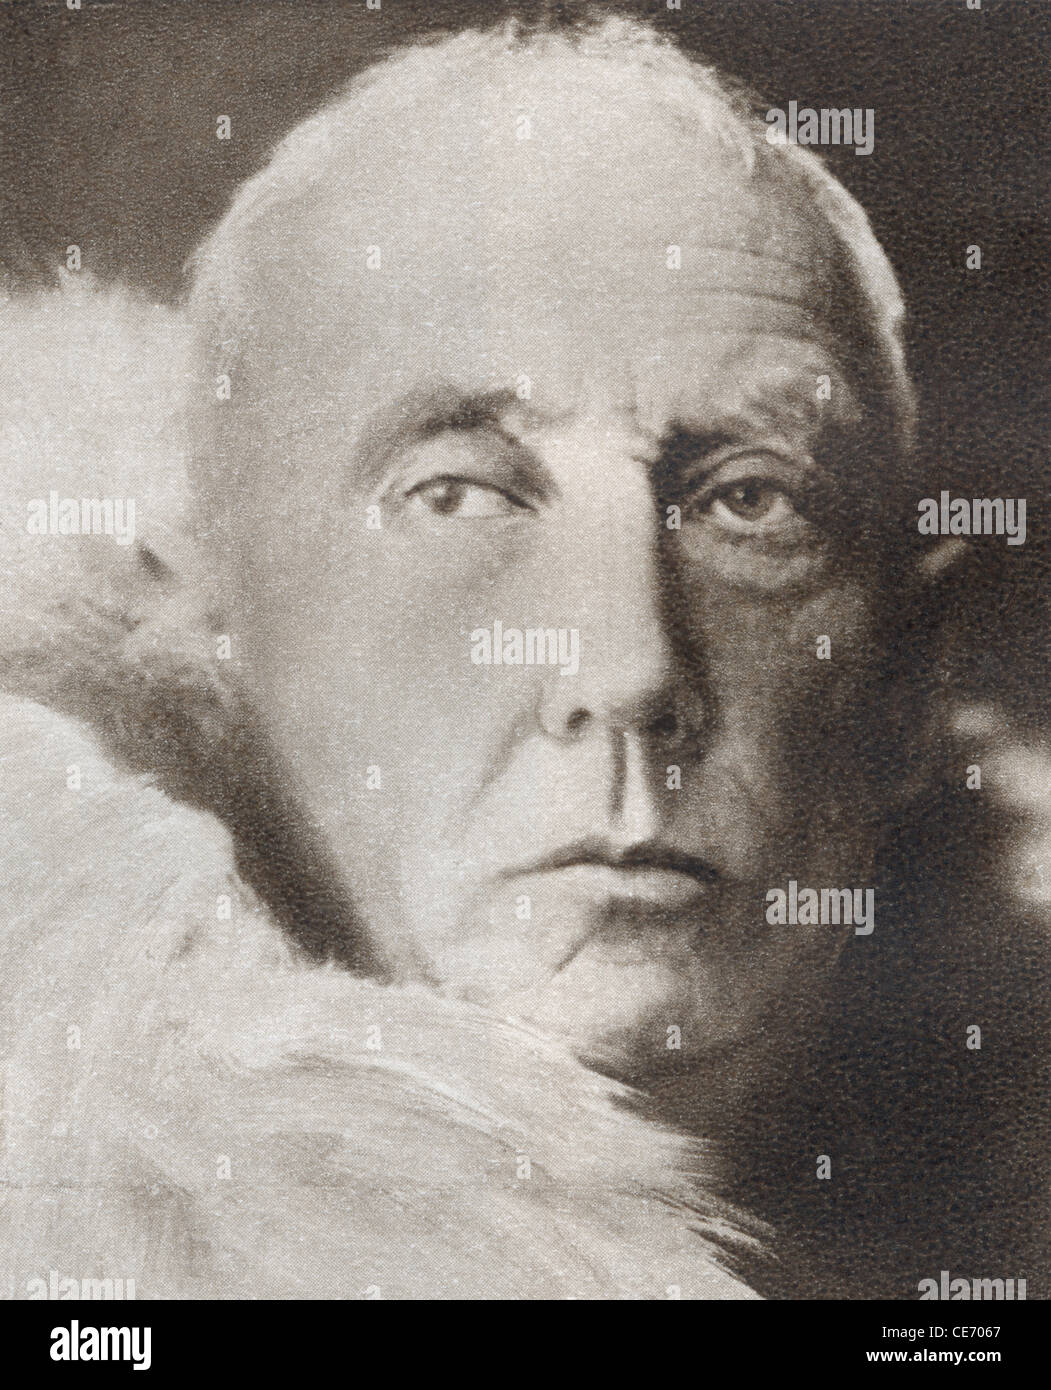 Roald Engelbregt Gravning Amundsen, 1872 - 1928. L'explorateur polaire norvégien et chef de la première expédition au pôle Sud. Banque D'Images